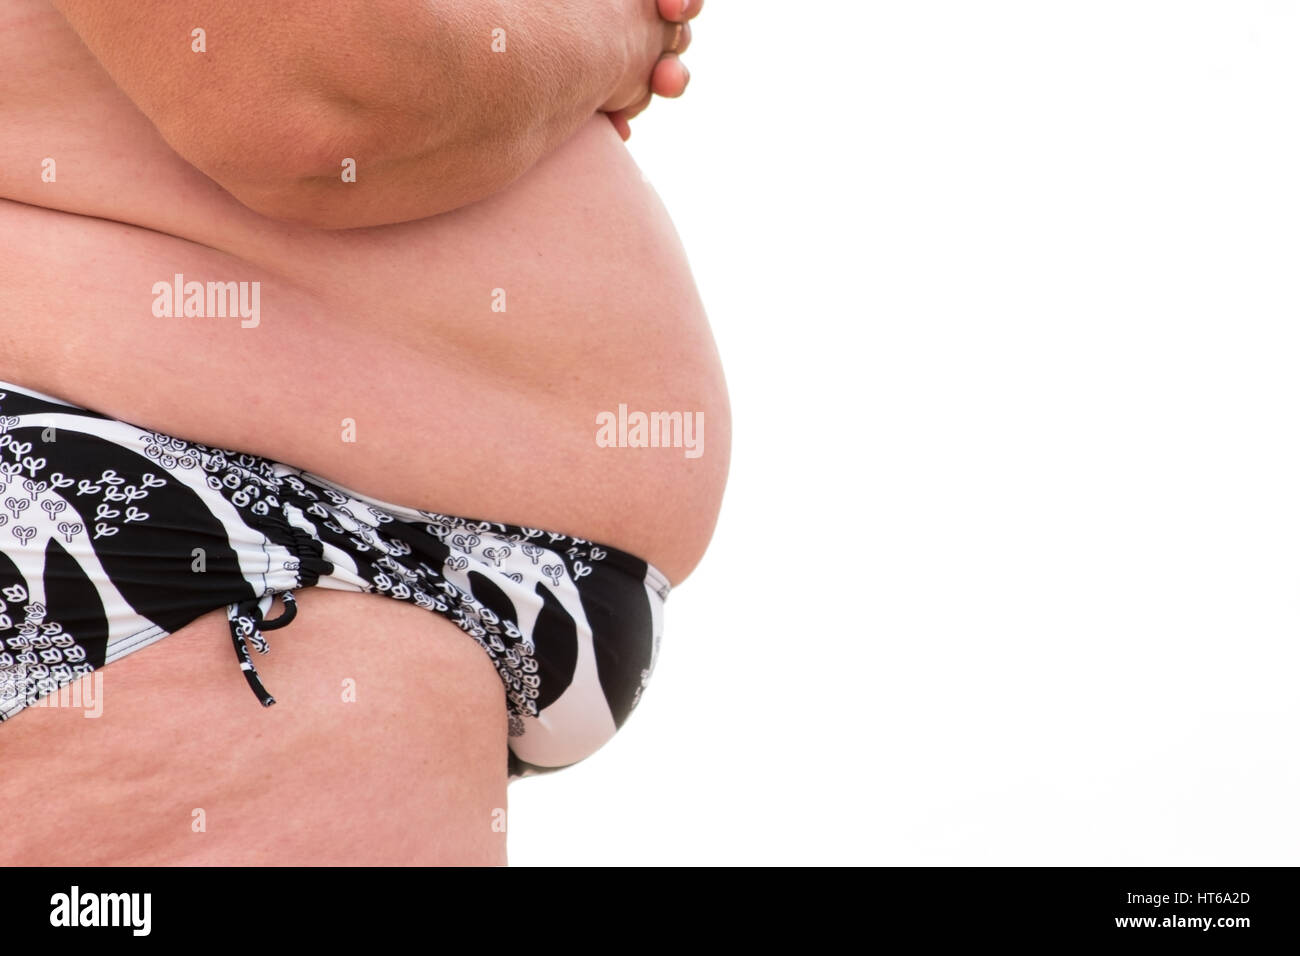 Eine fette Frau Bauch. Übergewichtigen Körper isoliert. Gesundheit ist in Gefahr. Nachwirkungen von übermäßigem Essen. Stockfoto